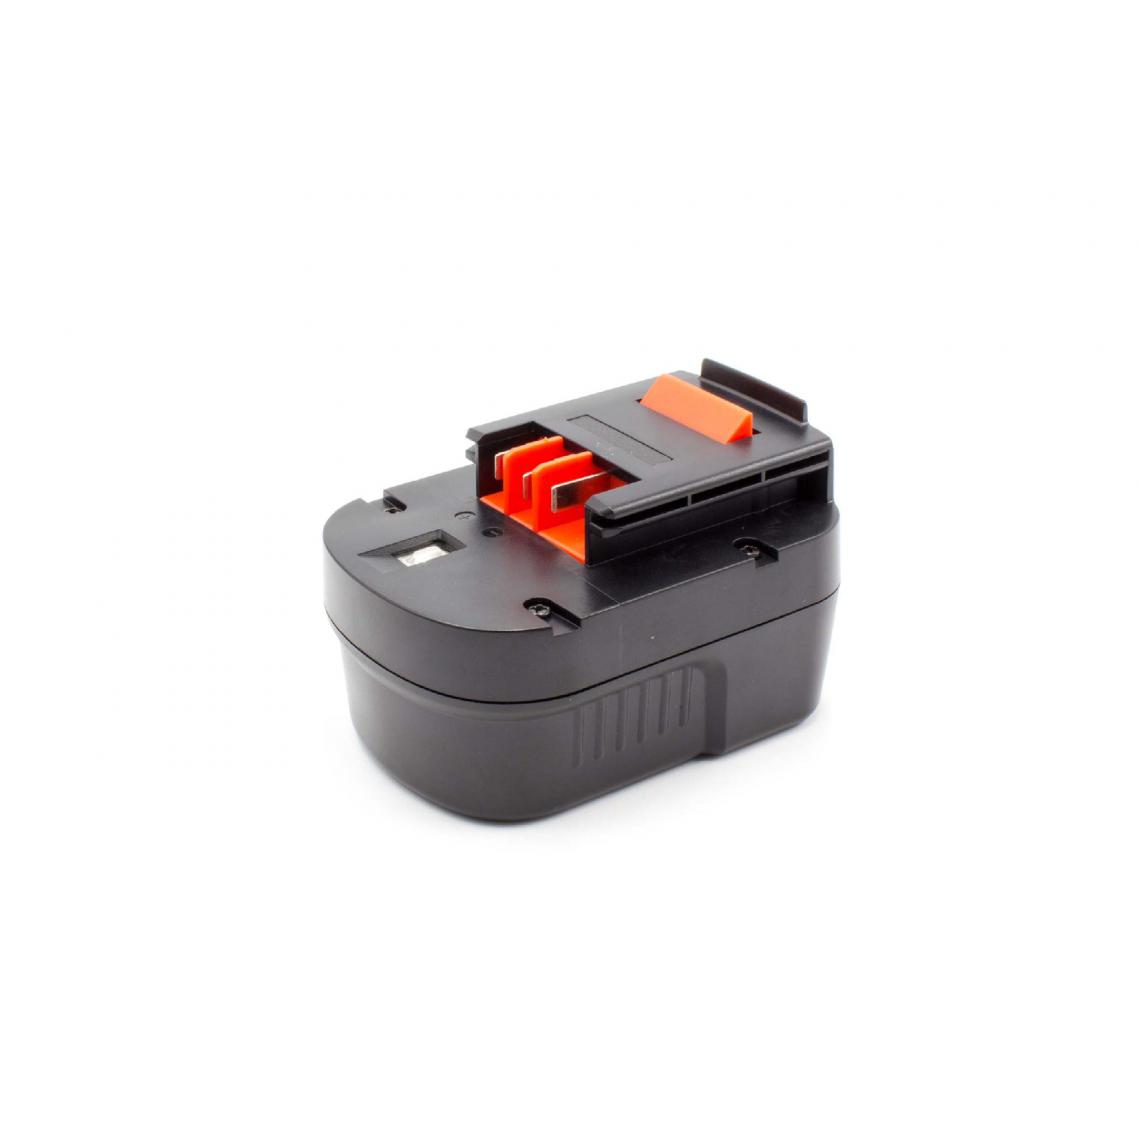 Vhbw - vhbw Batterie compatible avec Black & Decker HP122KD, HP126F2B, HP126F2K, HP126F3B, HP126F3K outil électrique (1500mAh NiMH 12 V) - Accessoires vissage, perçage